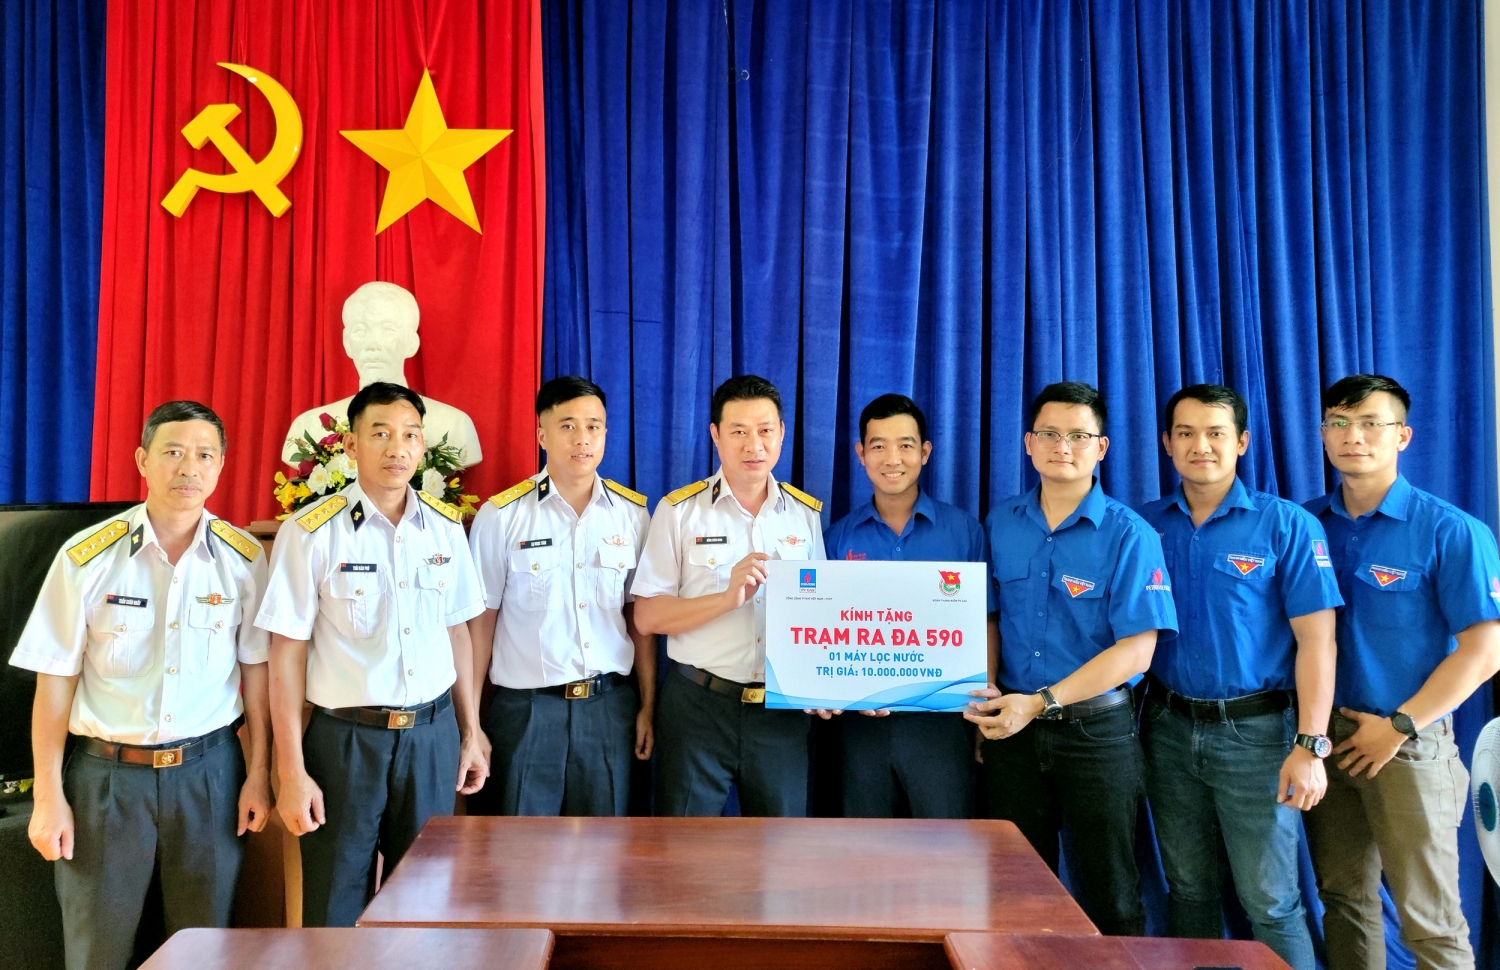 Đoàn công tác KVT – đại diện Đoàn Thanh niên PV GAS đến thăm và tặng máy lọc nước cho Trạm Radar 590 của Trung đoàn 251 - Bộ Quốc phòng